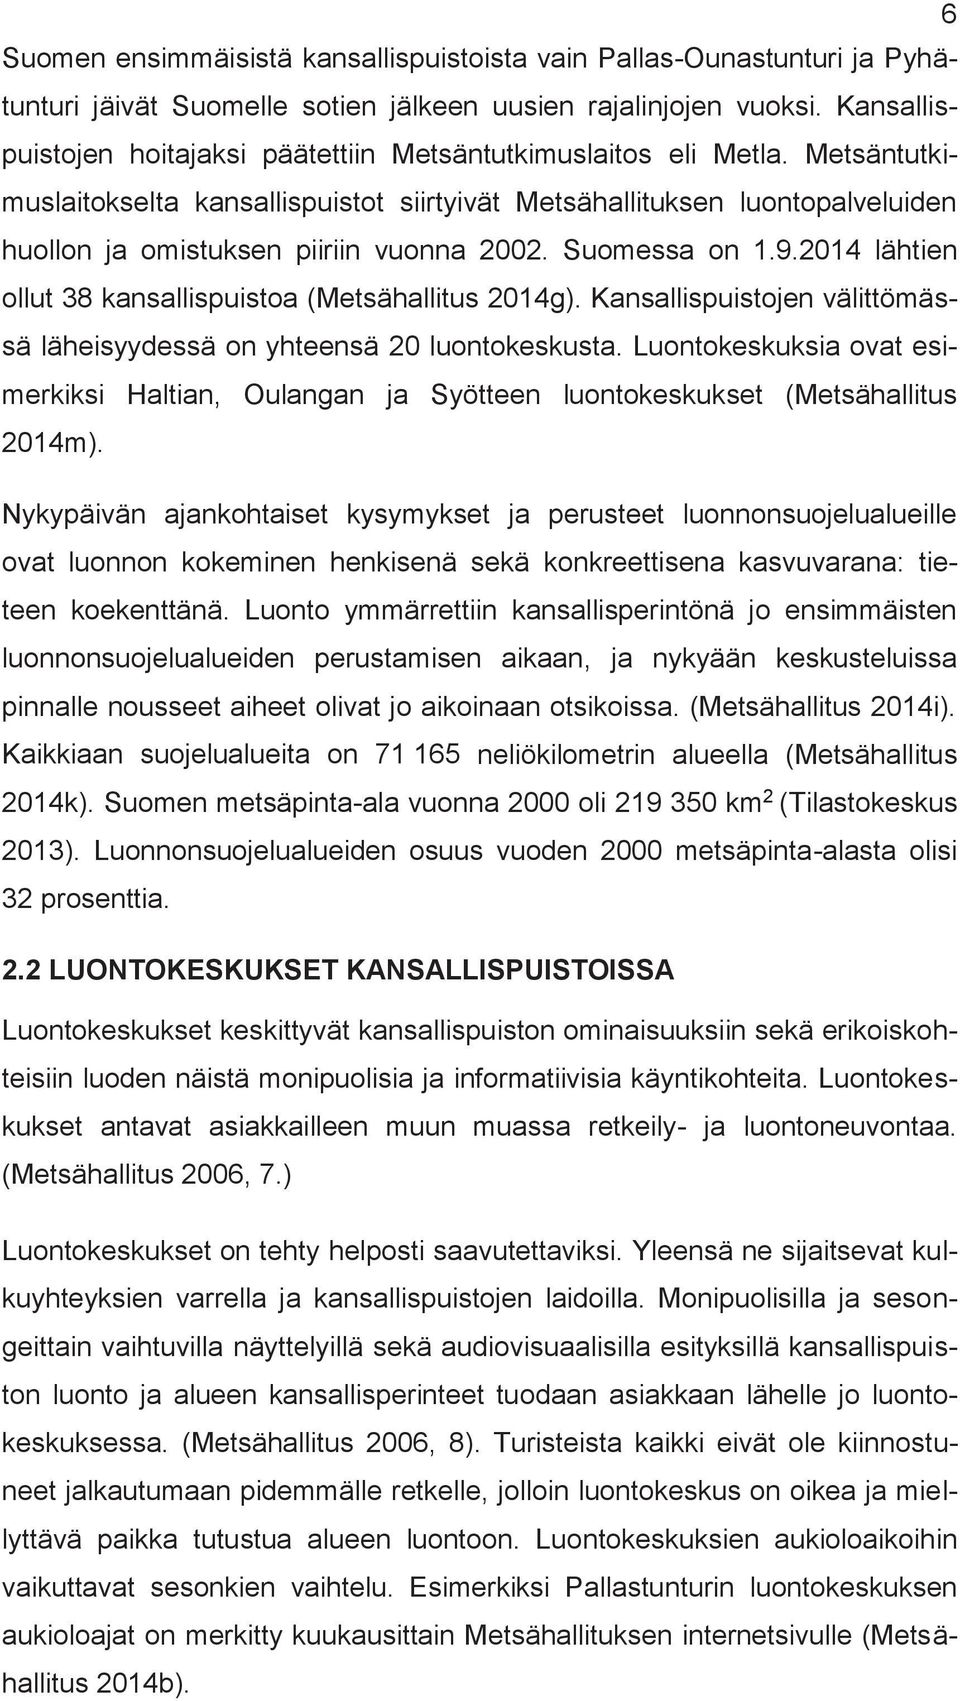 Metsäntutkiuslaitokselta kansallispuistot siirtyivät Metsähallituksen luontopalveluiden huollon ja oistuksen piiriin vuonna 2002. Suoessa on.9.